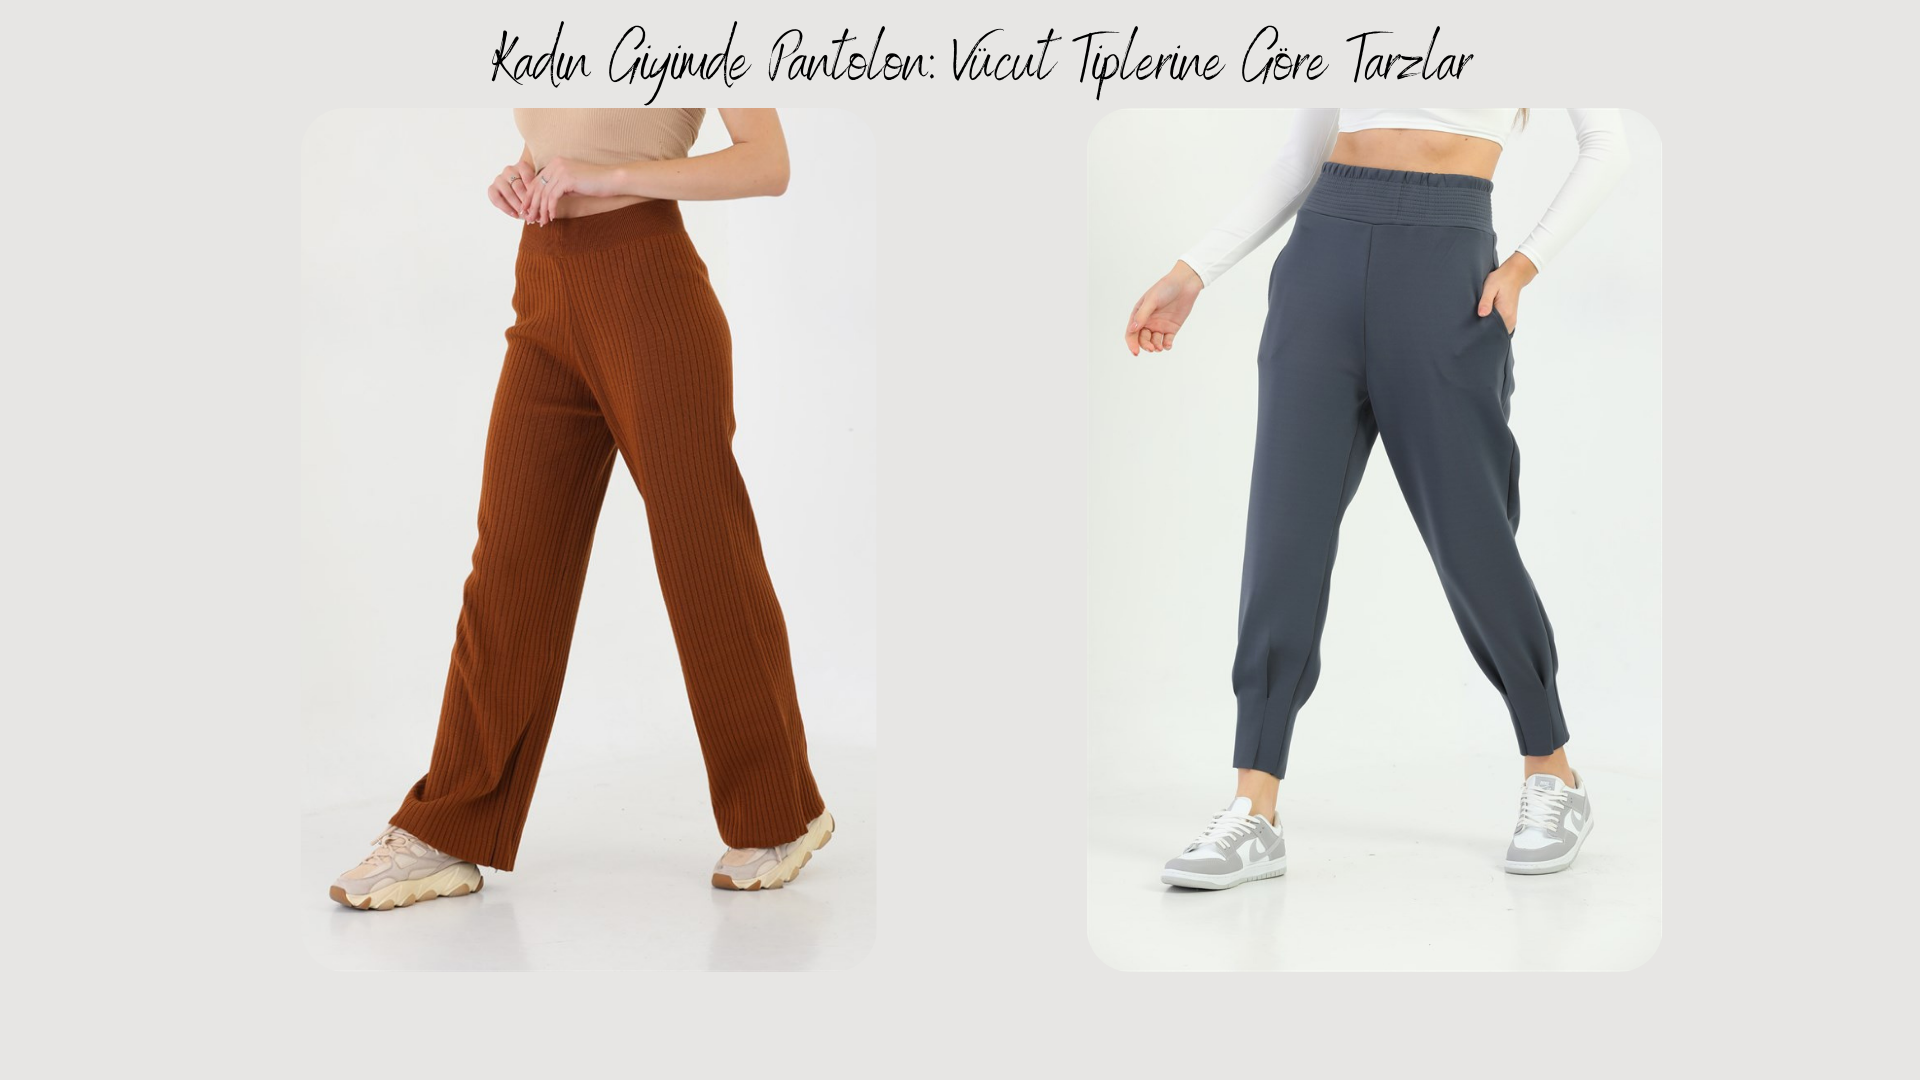 Kadın Giyimde Pantolon: Vücut Tiplerine Göre Tarzlar